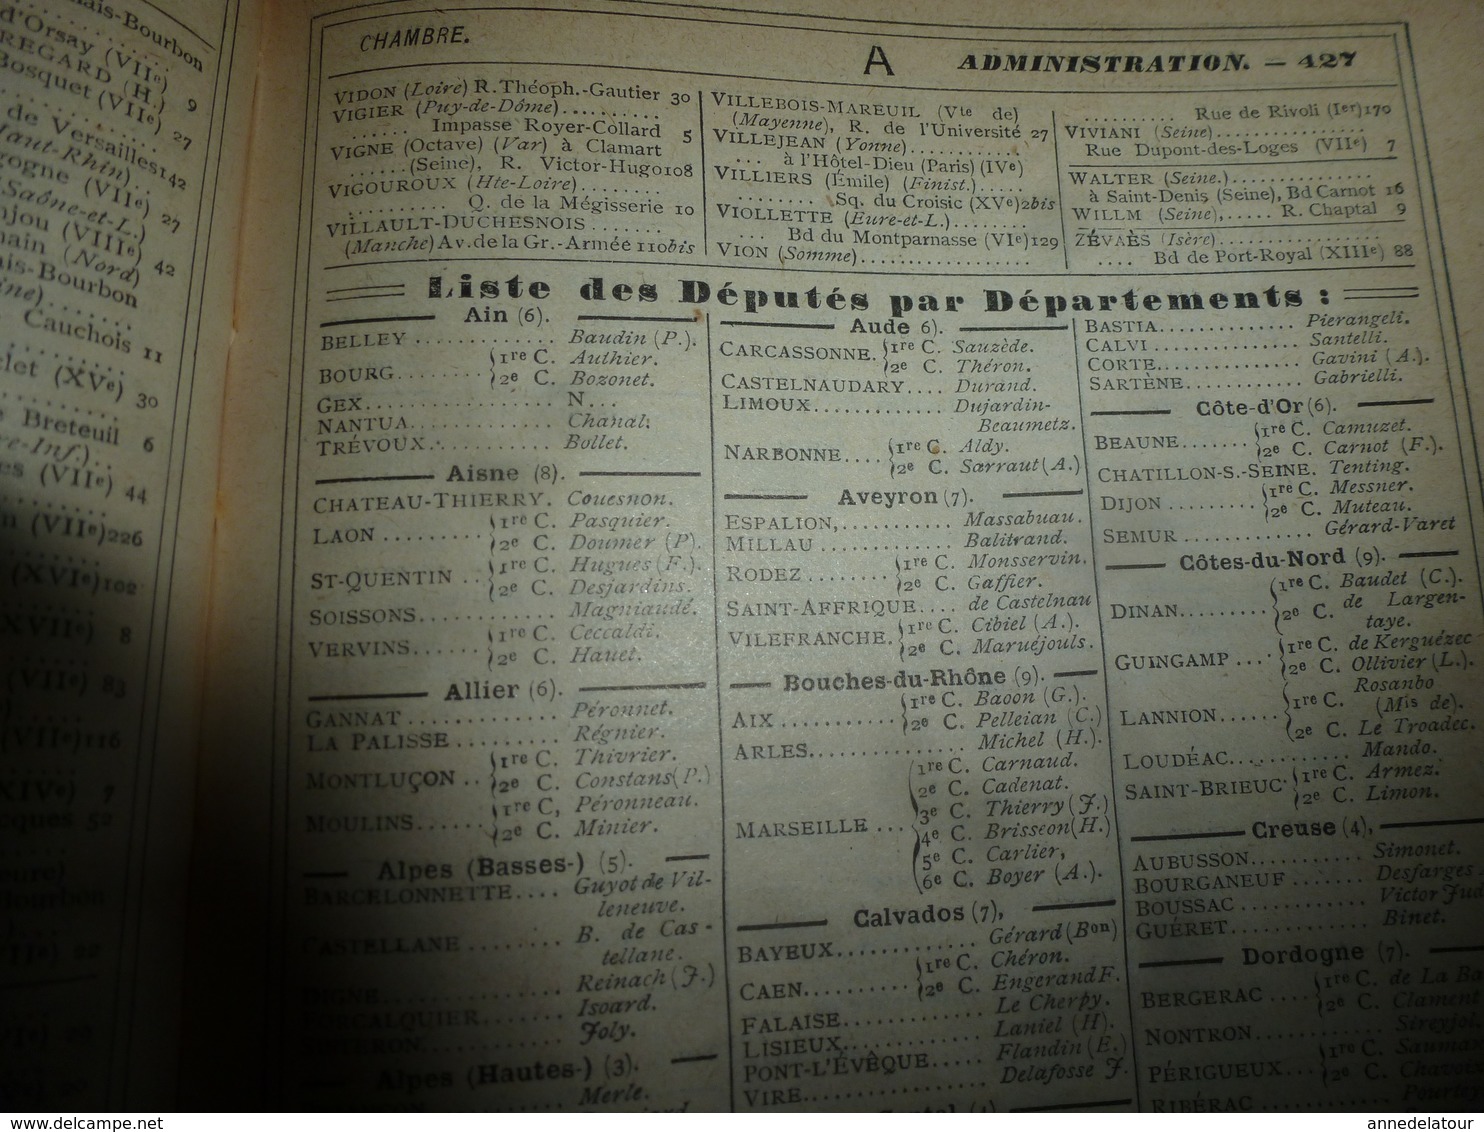 1909 En BRETAGNE 13 maris pour 1 femme, En ALSACE  2/3 de mari pour 1 femme;etc (éd. luxe) ALMANACH HACHETTE